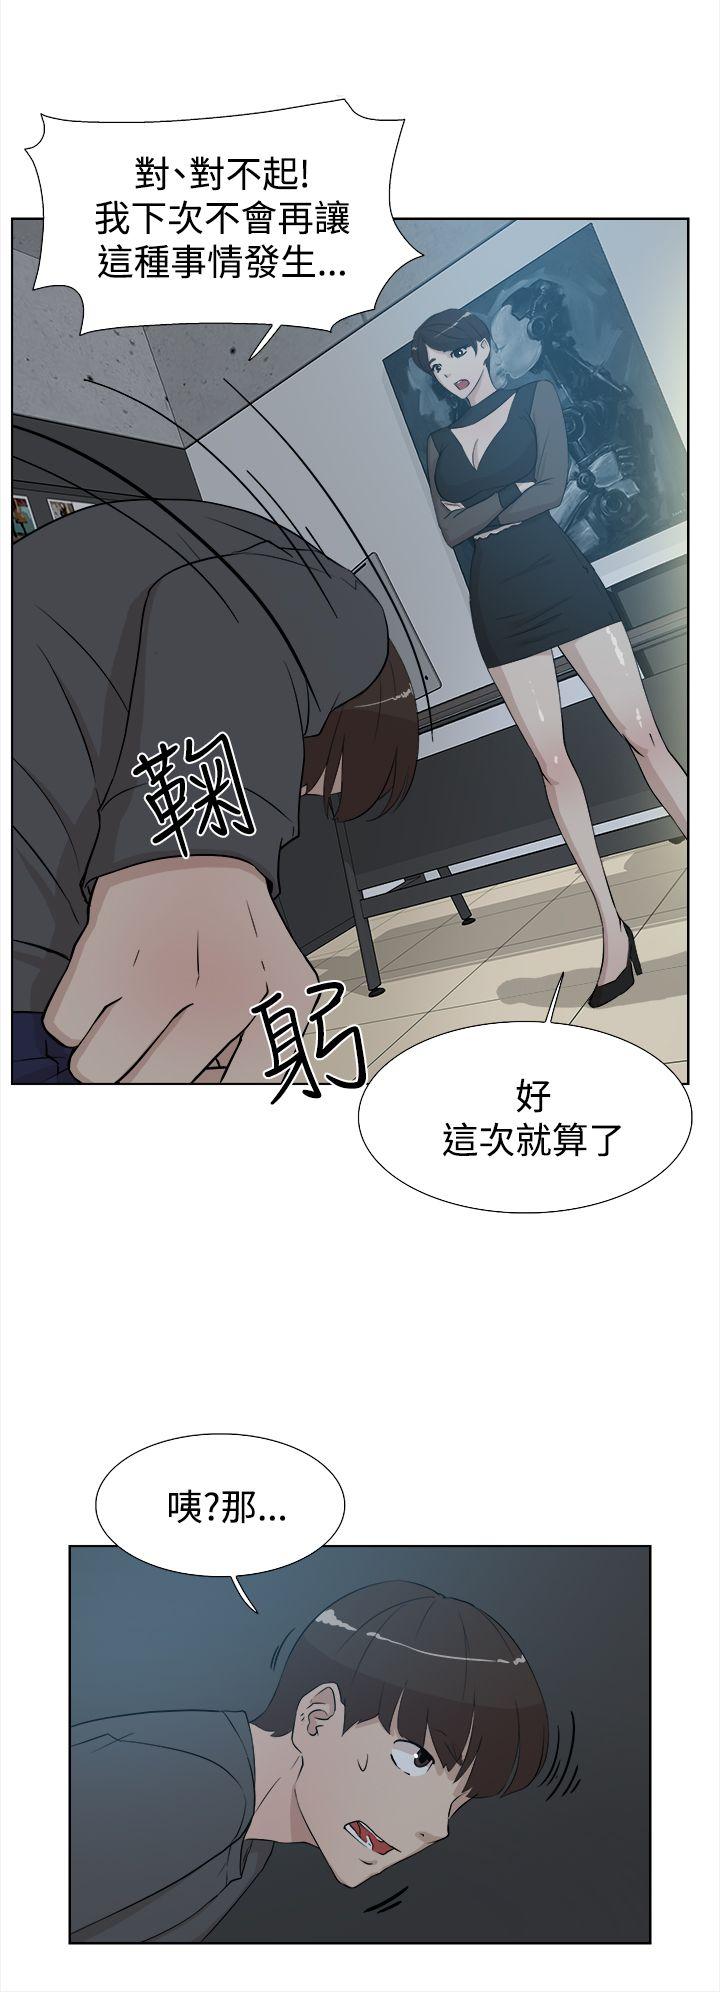 韩国污漫画 她的高跟鞋(無刪減) 第11话 20